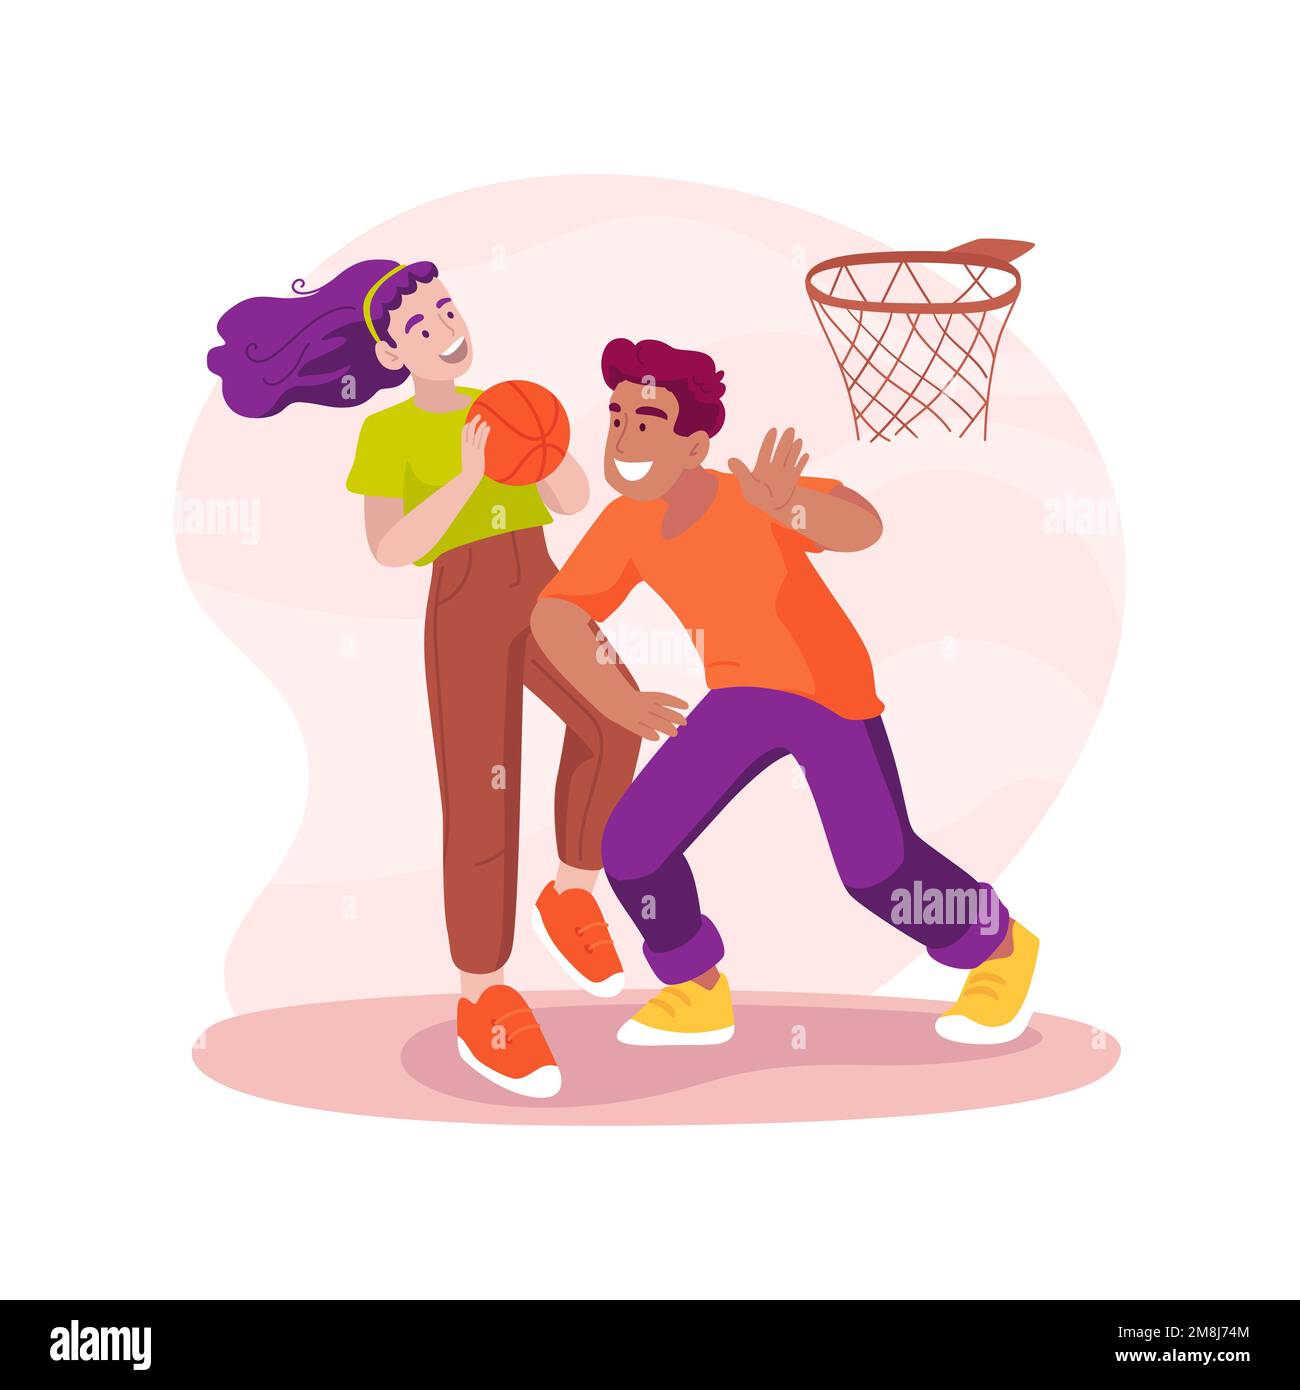 Basketball-isolierte Cartoon-Vektordarstellung. Gemeindebasketballspielplatz, junge Leute spielen, Vorstadthäuser im Hintergrund, Nachbarschaft sp Stock Vektor